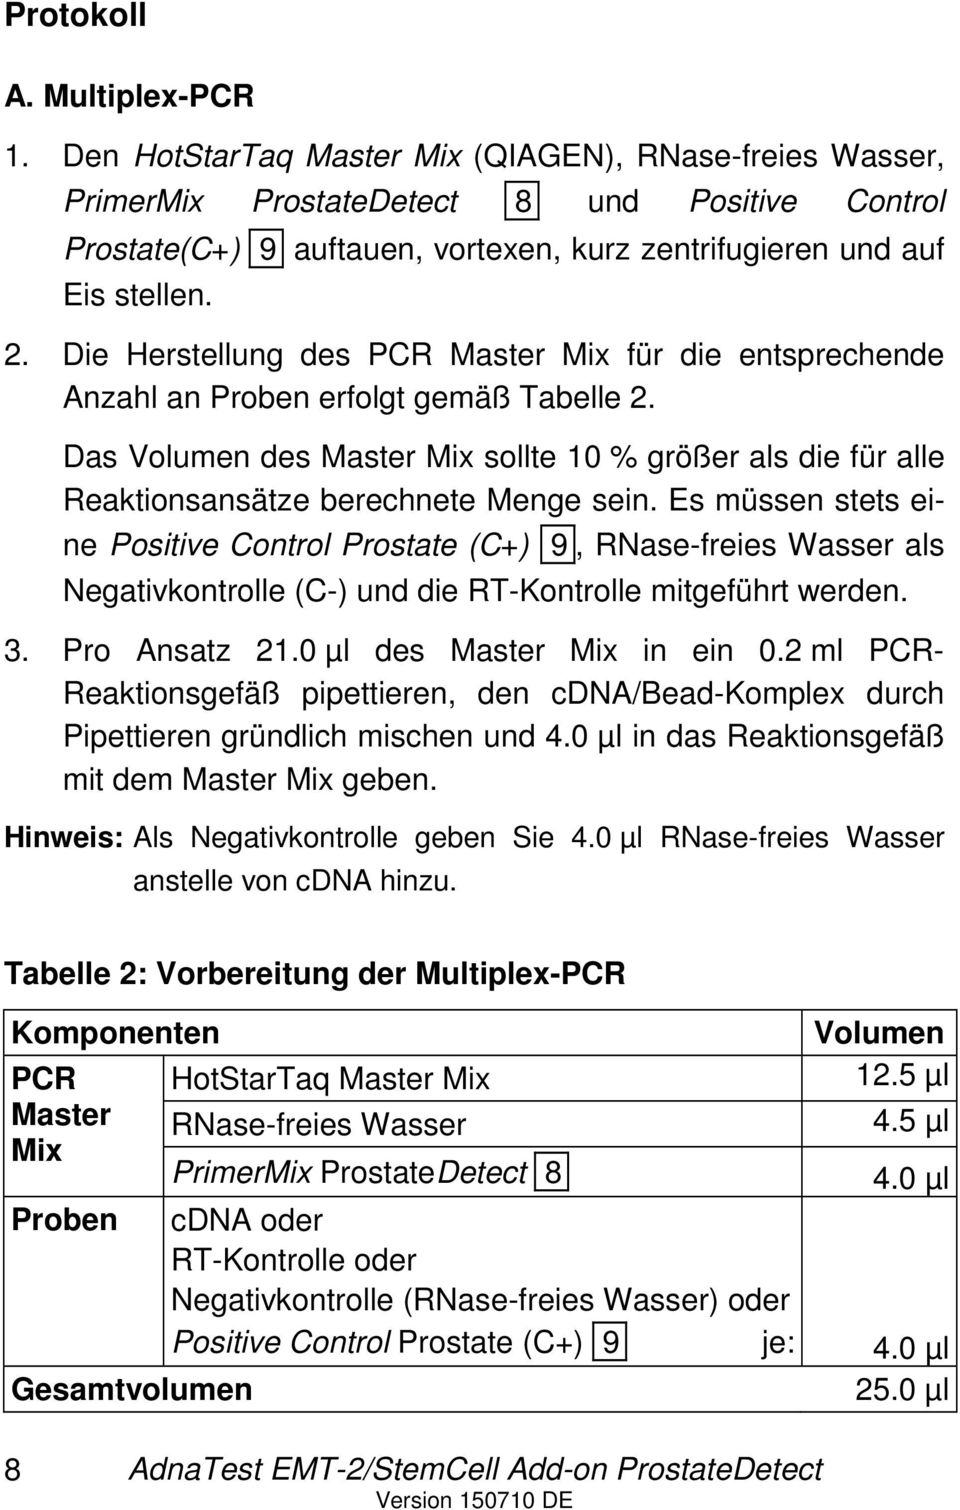 Die Herstellung des PCR Master Mix für die entsprechende Anzahl an Proben erfolgt gemäß Tabelle 2.